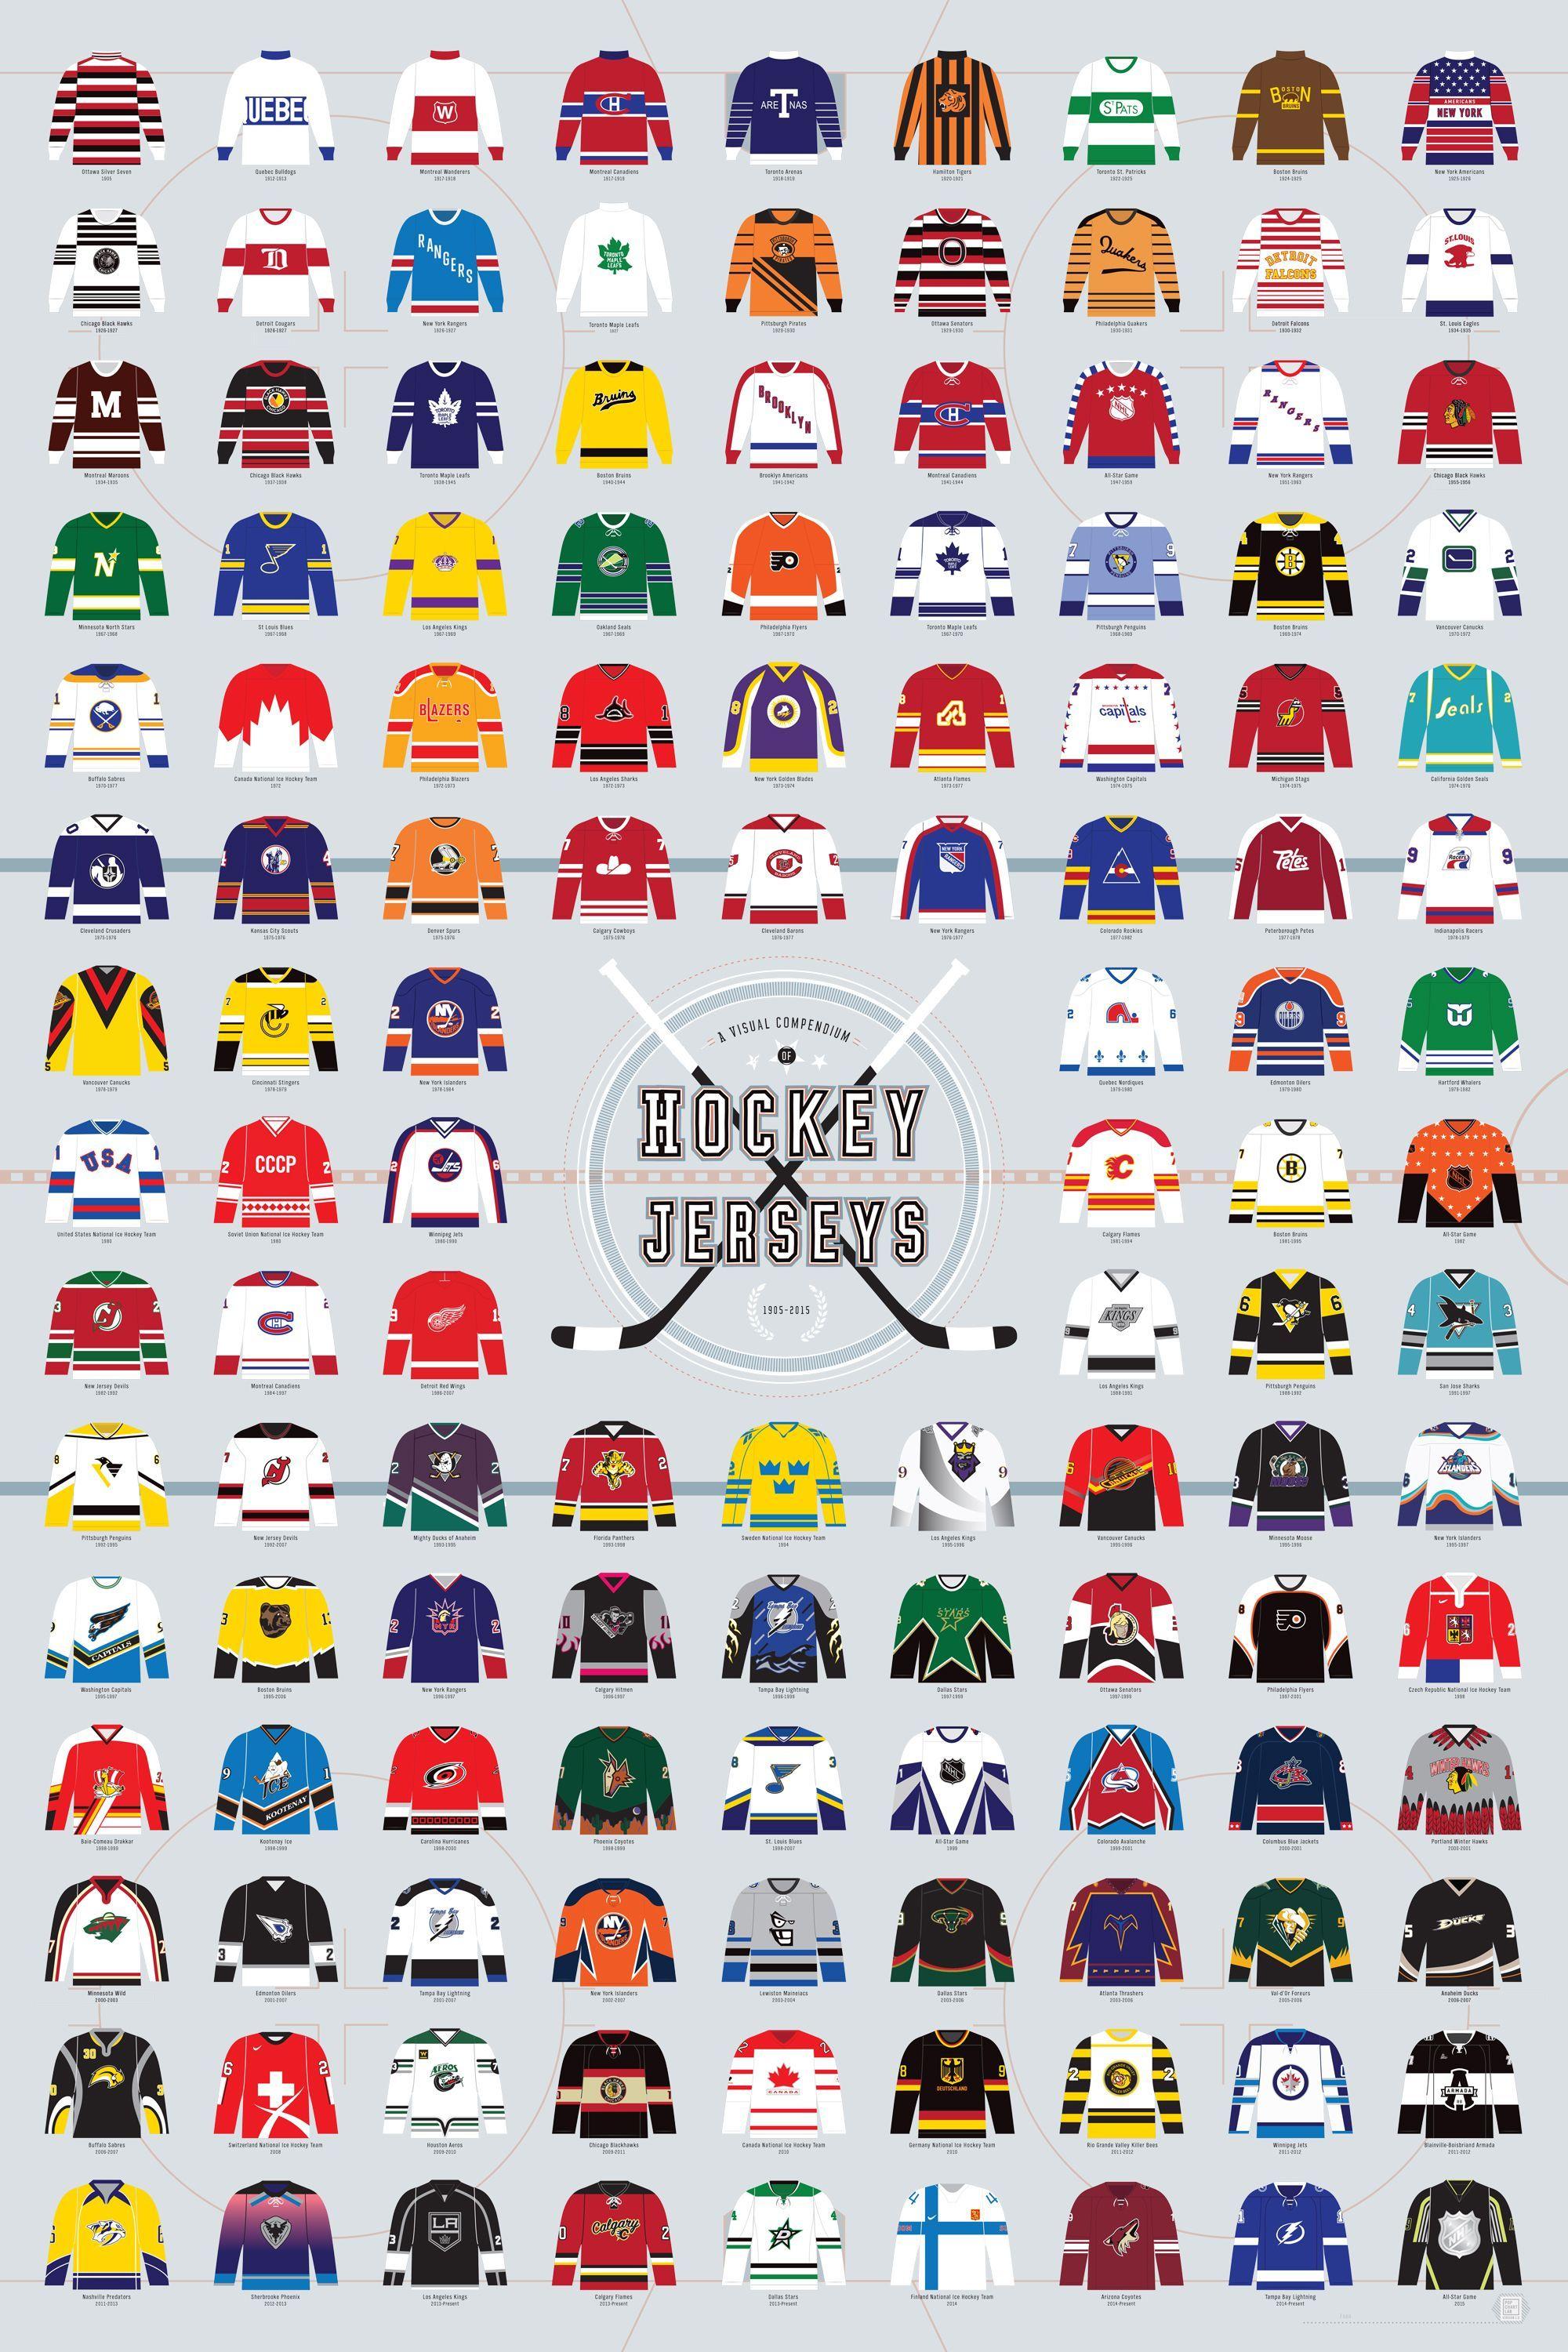 Custom Hockey Logo - A Visual Compendium of Hockey Jerseys | Sports and Sneakers | Hockey ...